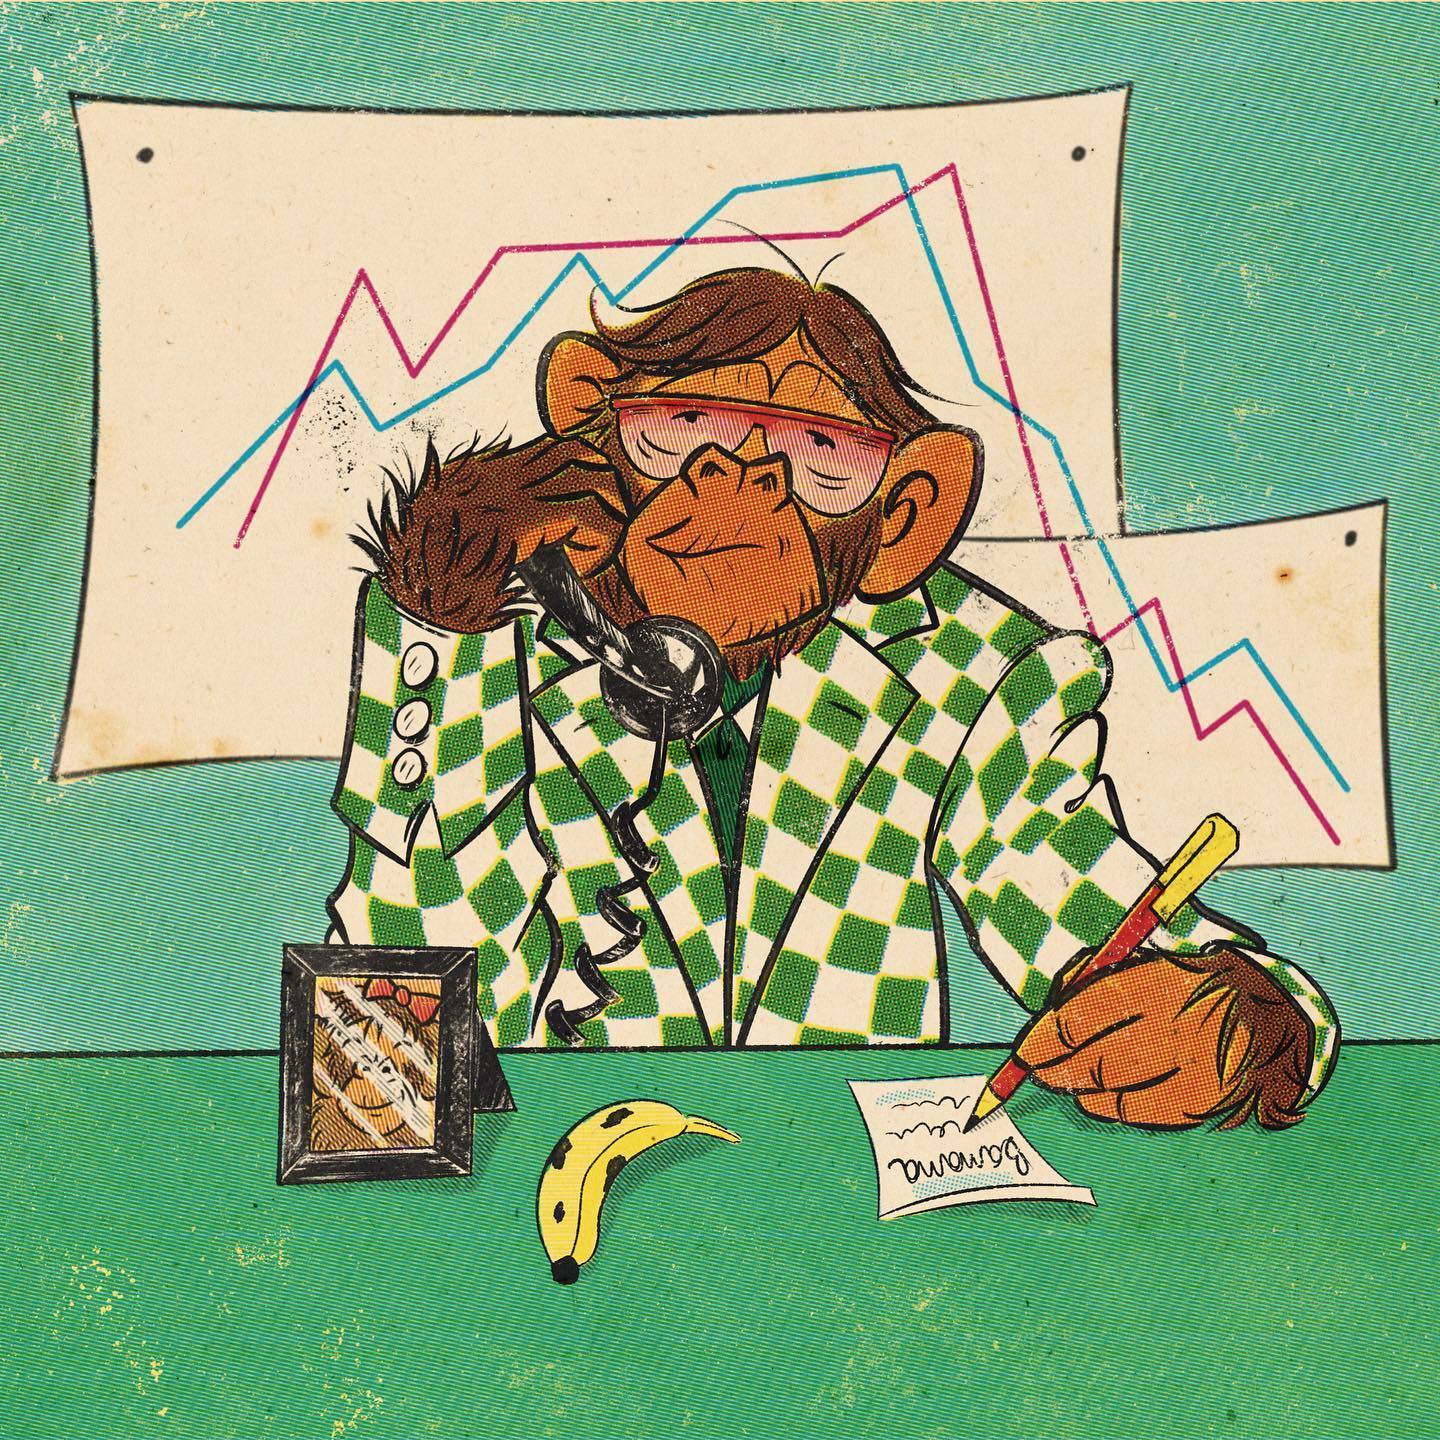 Eduardo Correa - Vintage comic chimpanzee illustration.